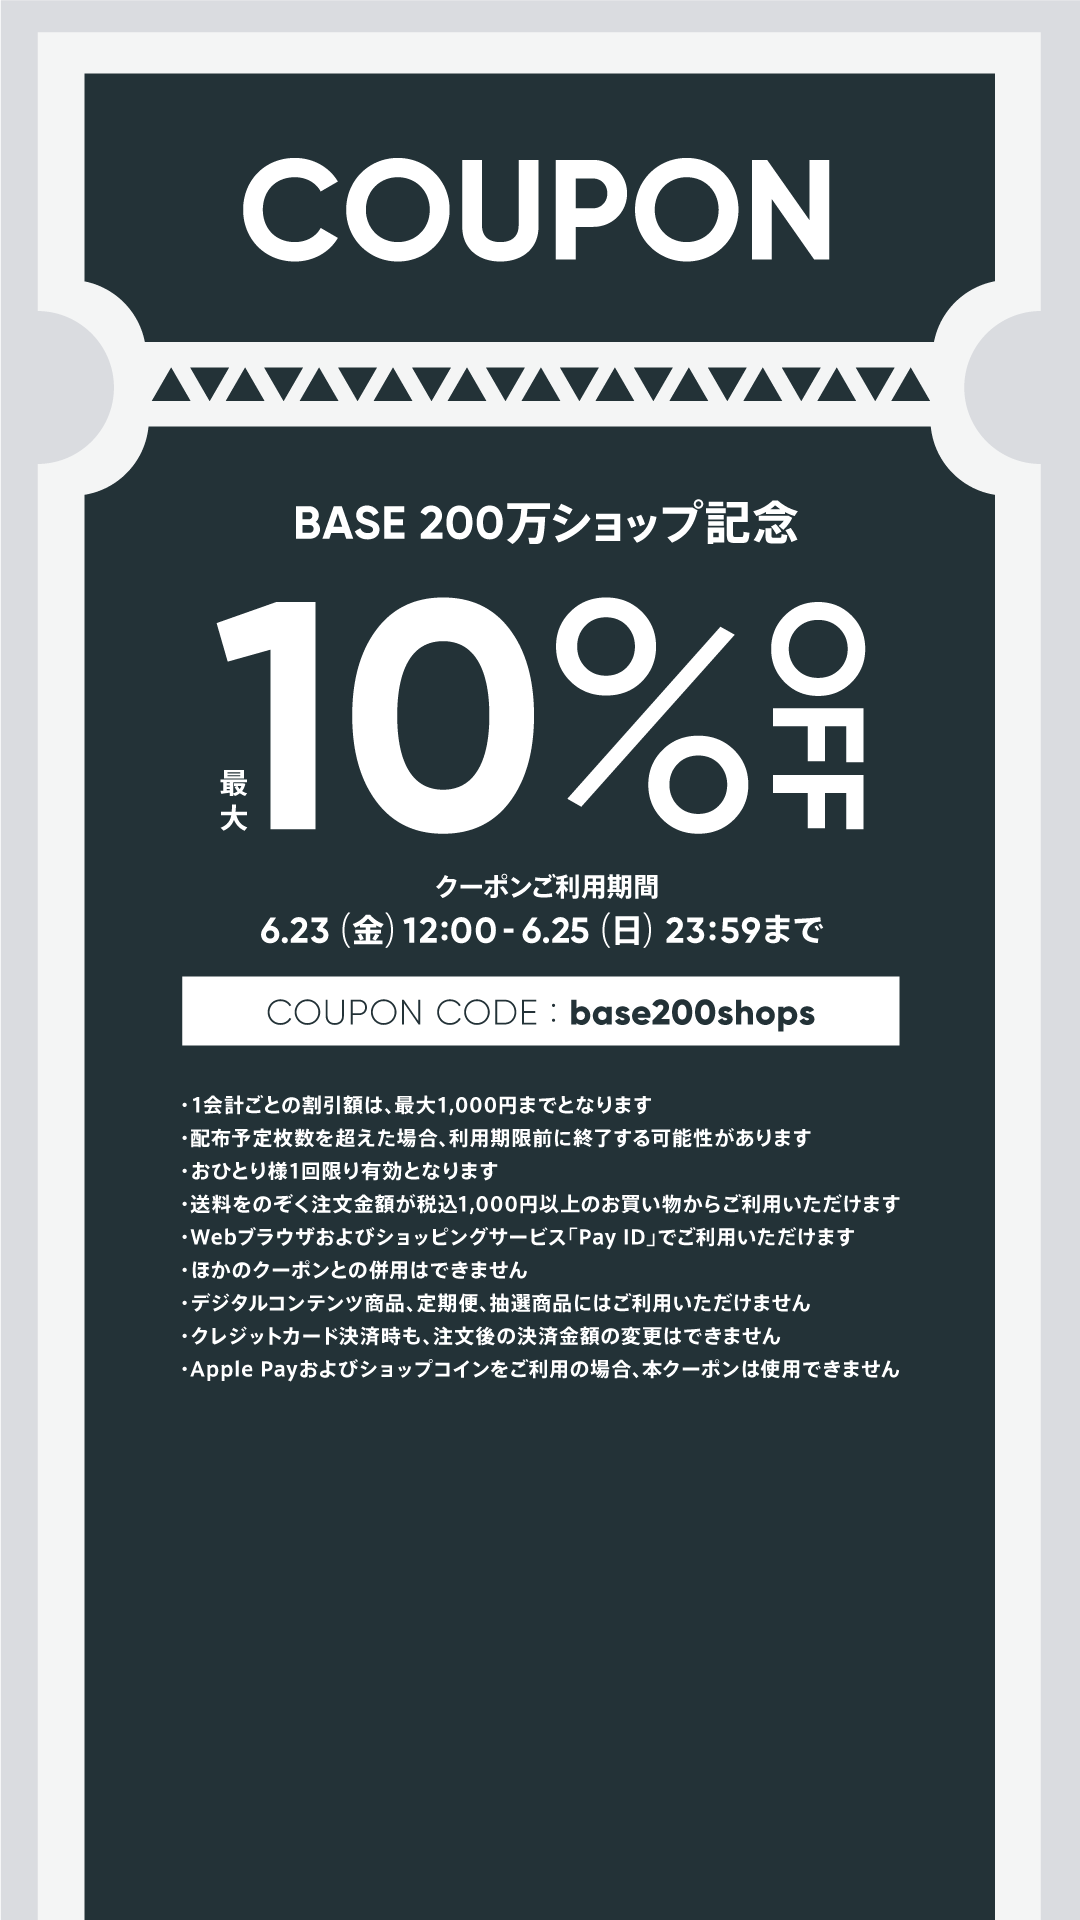 「BASE 200万ショップ開設記念 クーポンキャンペーン」のお知らせ